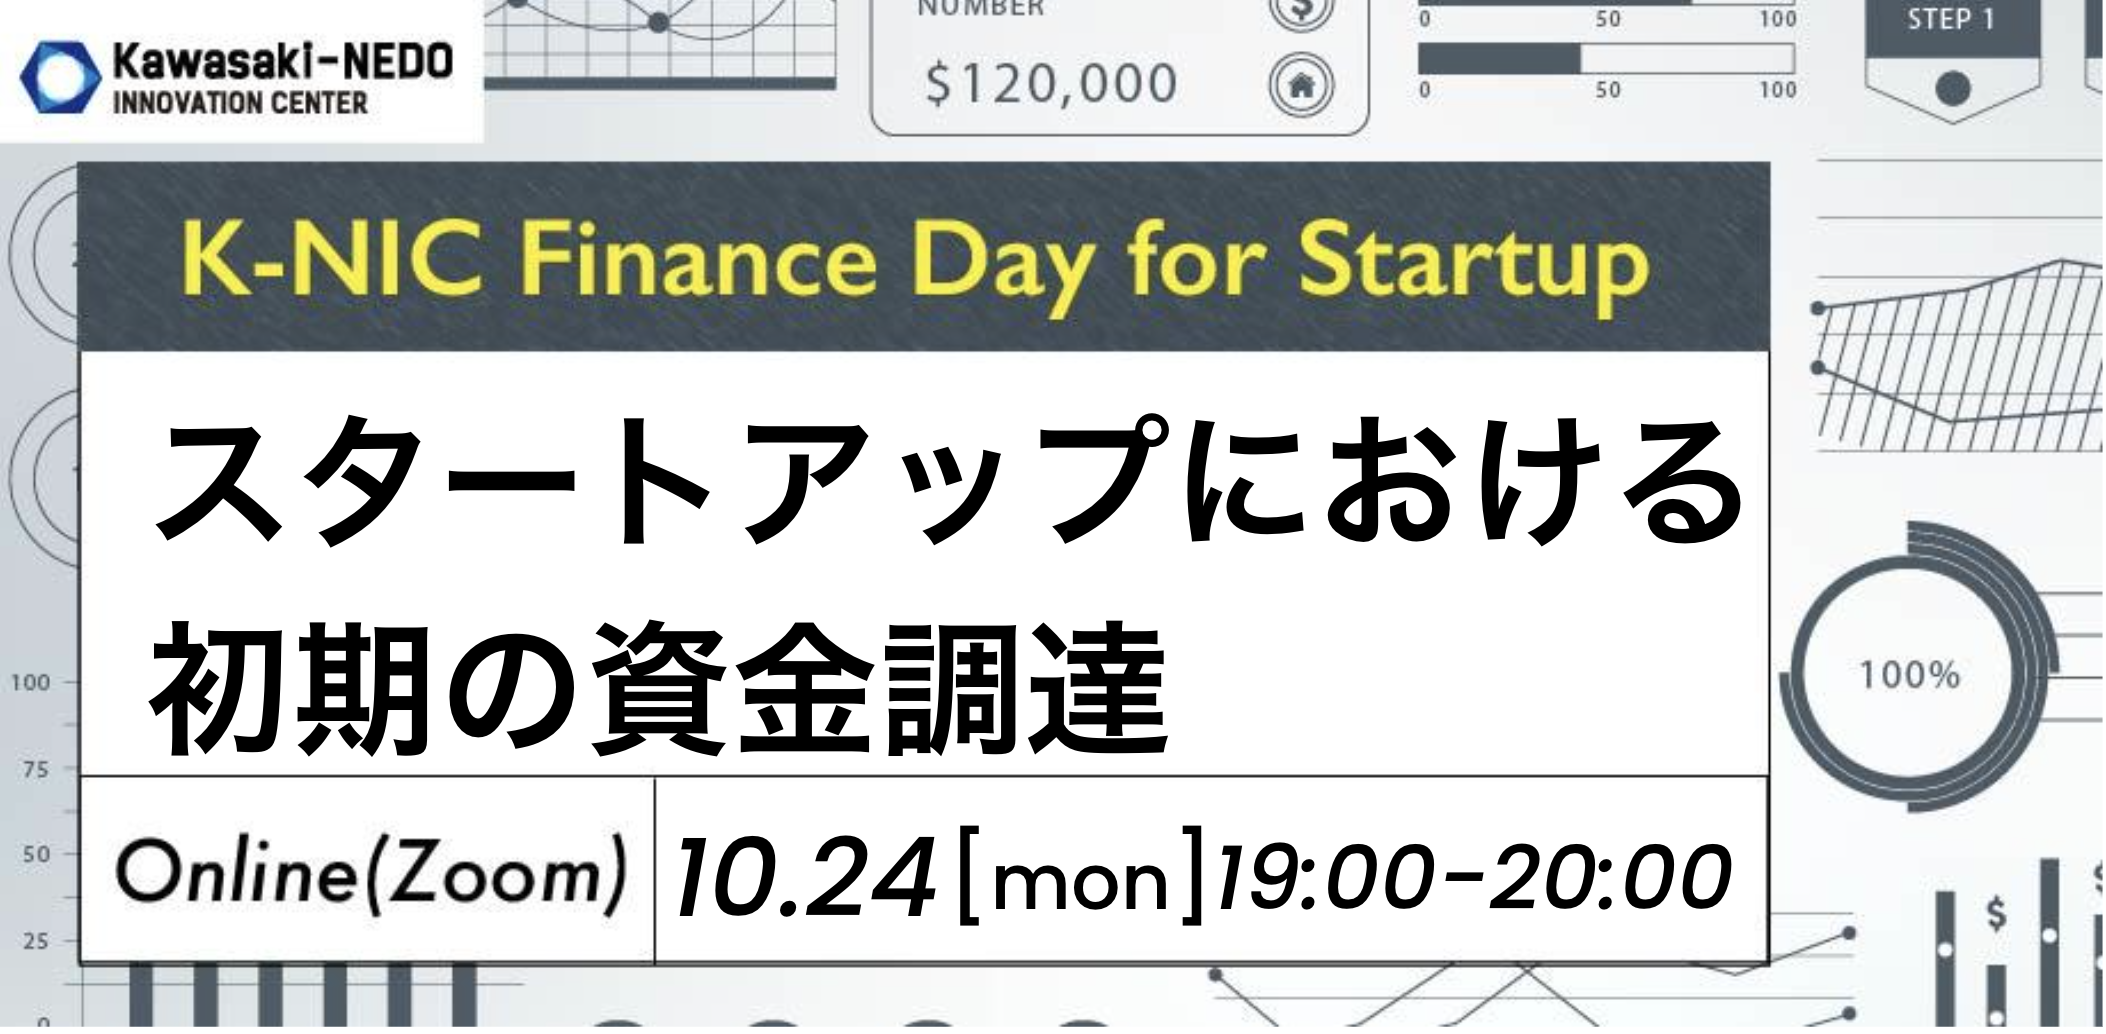 【10/24開催】K-NIC Finance Day for Startup スタートアップにおける初期の資金調達